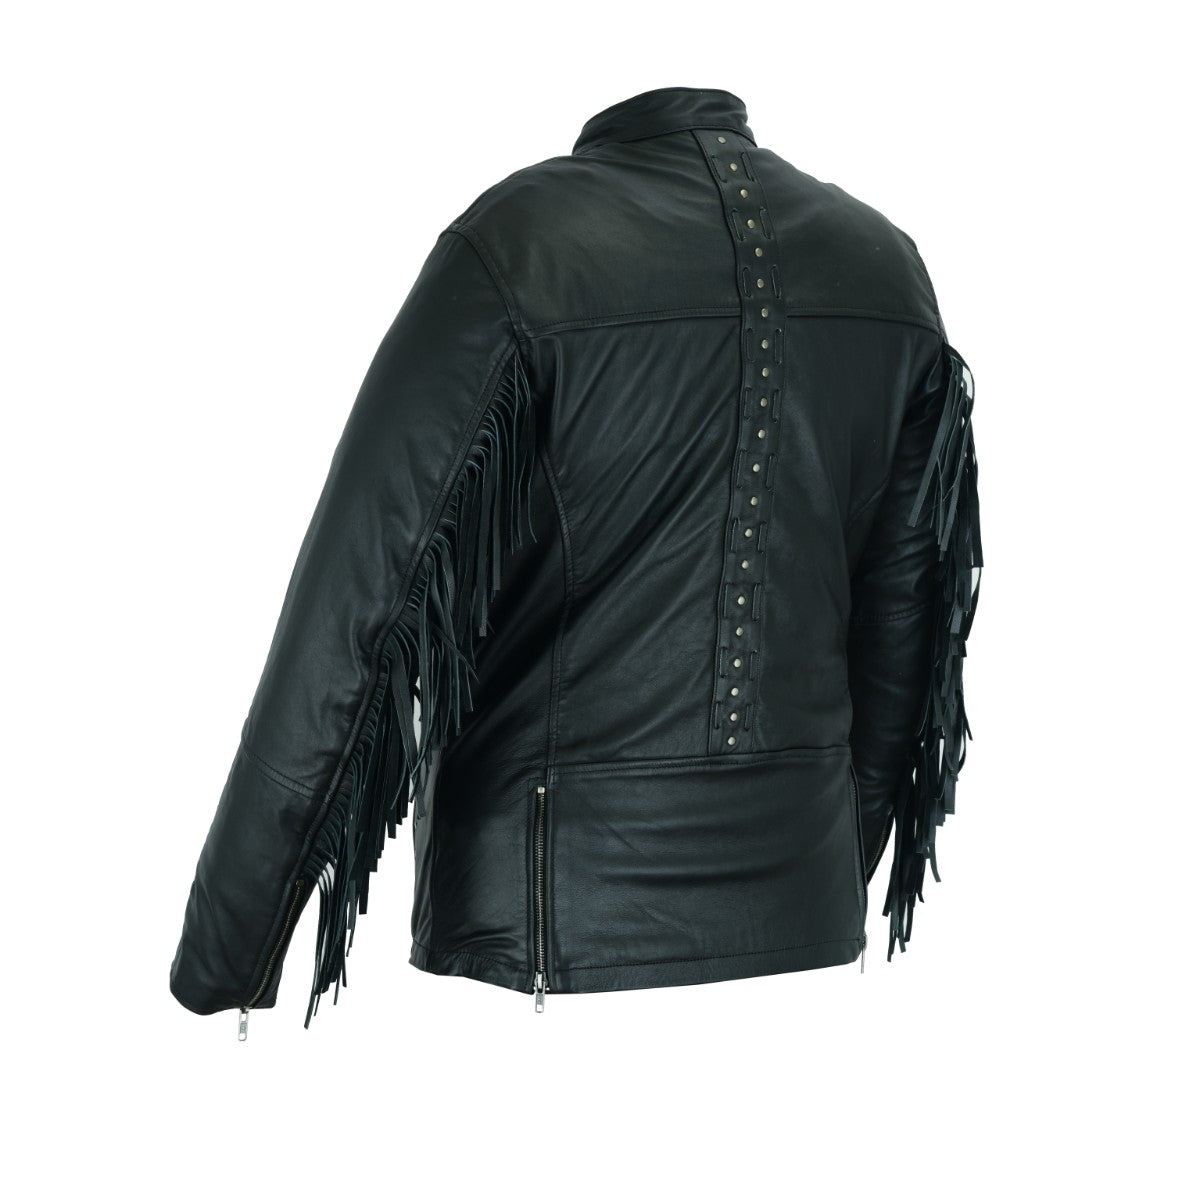 HML704B High Mileage Ladies Black Fringe and Black Studs Leather Jacket